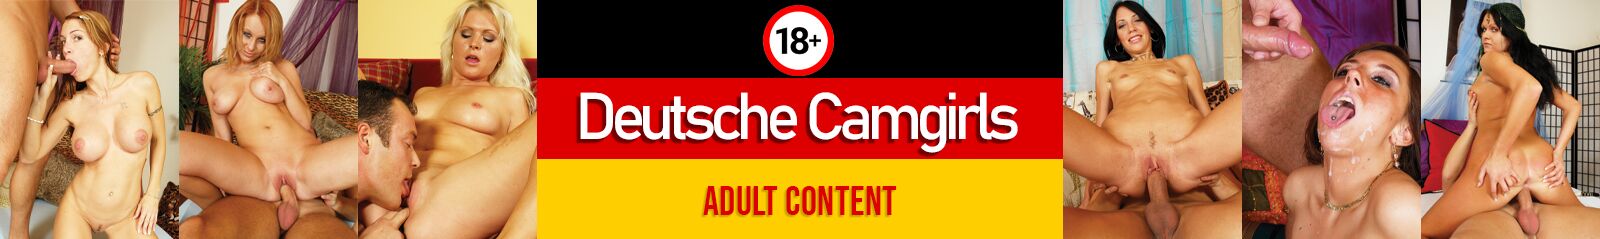 Deutsche Camgirls